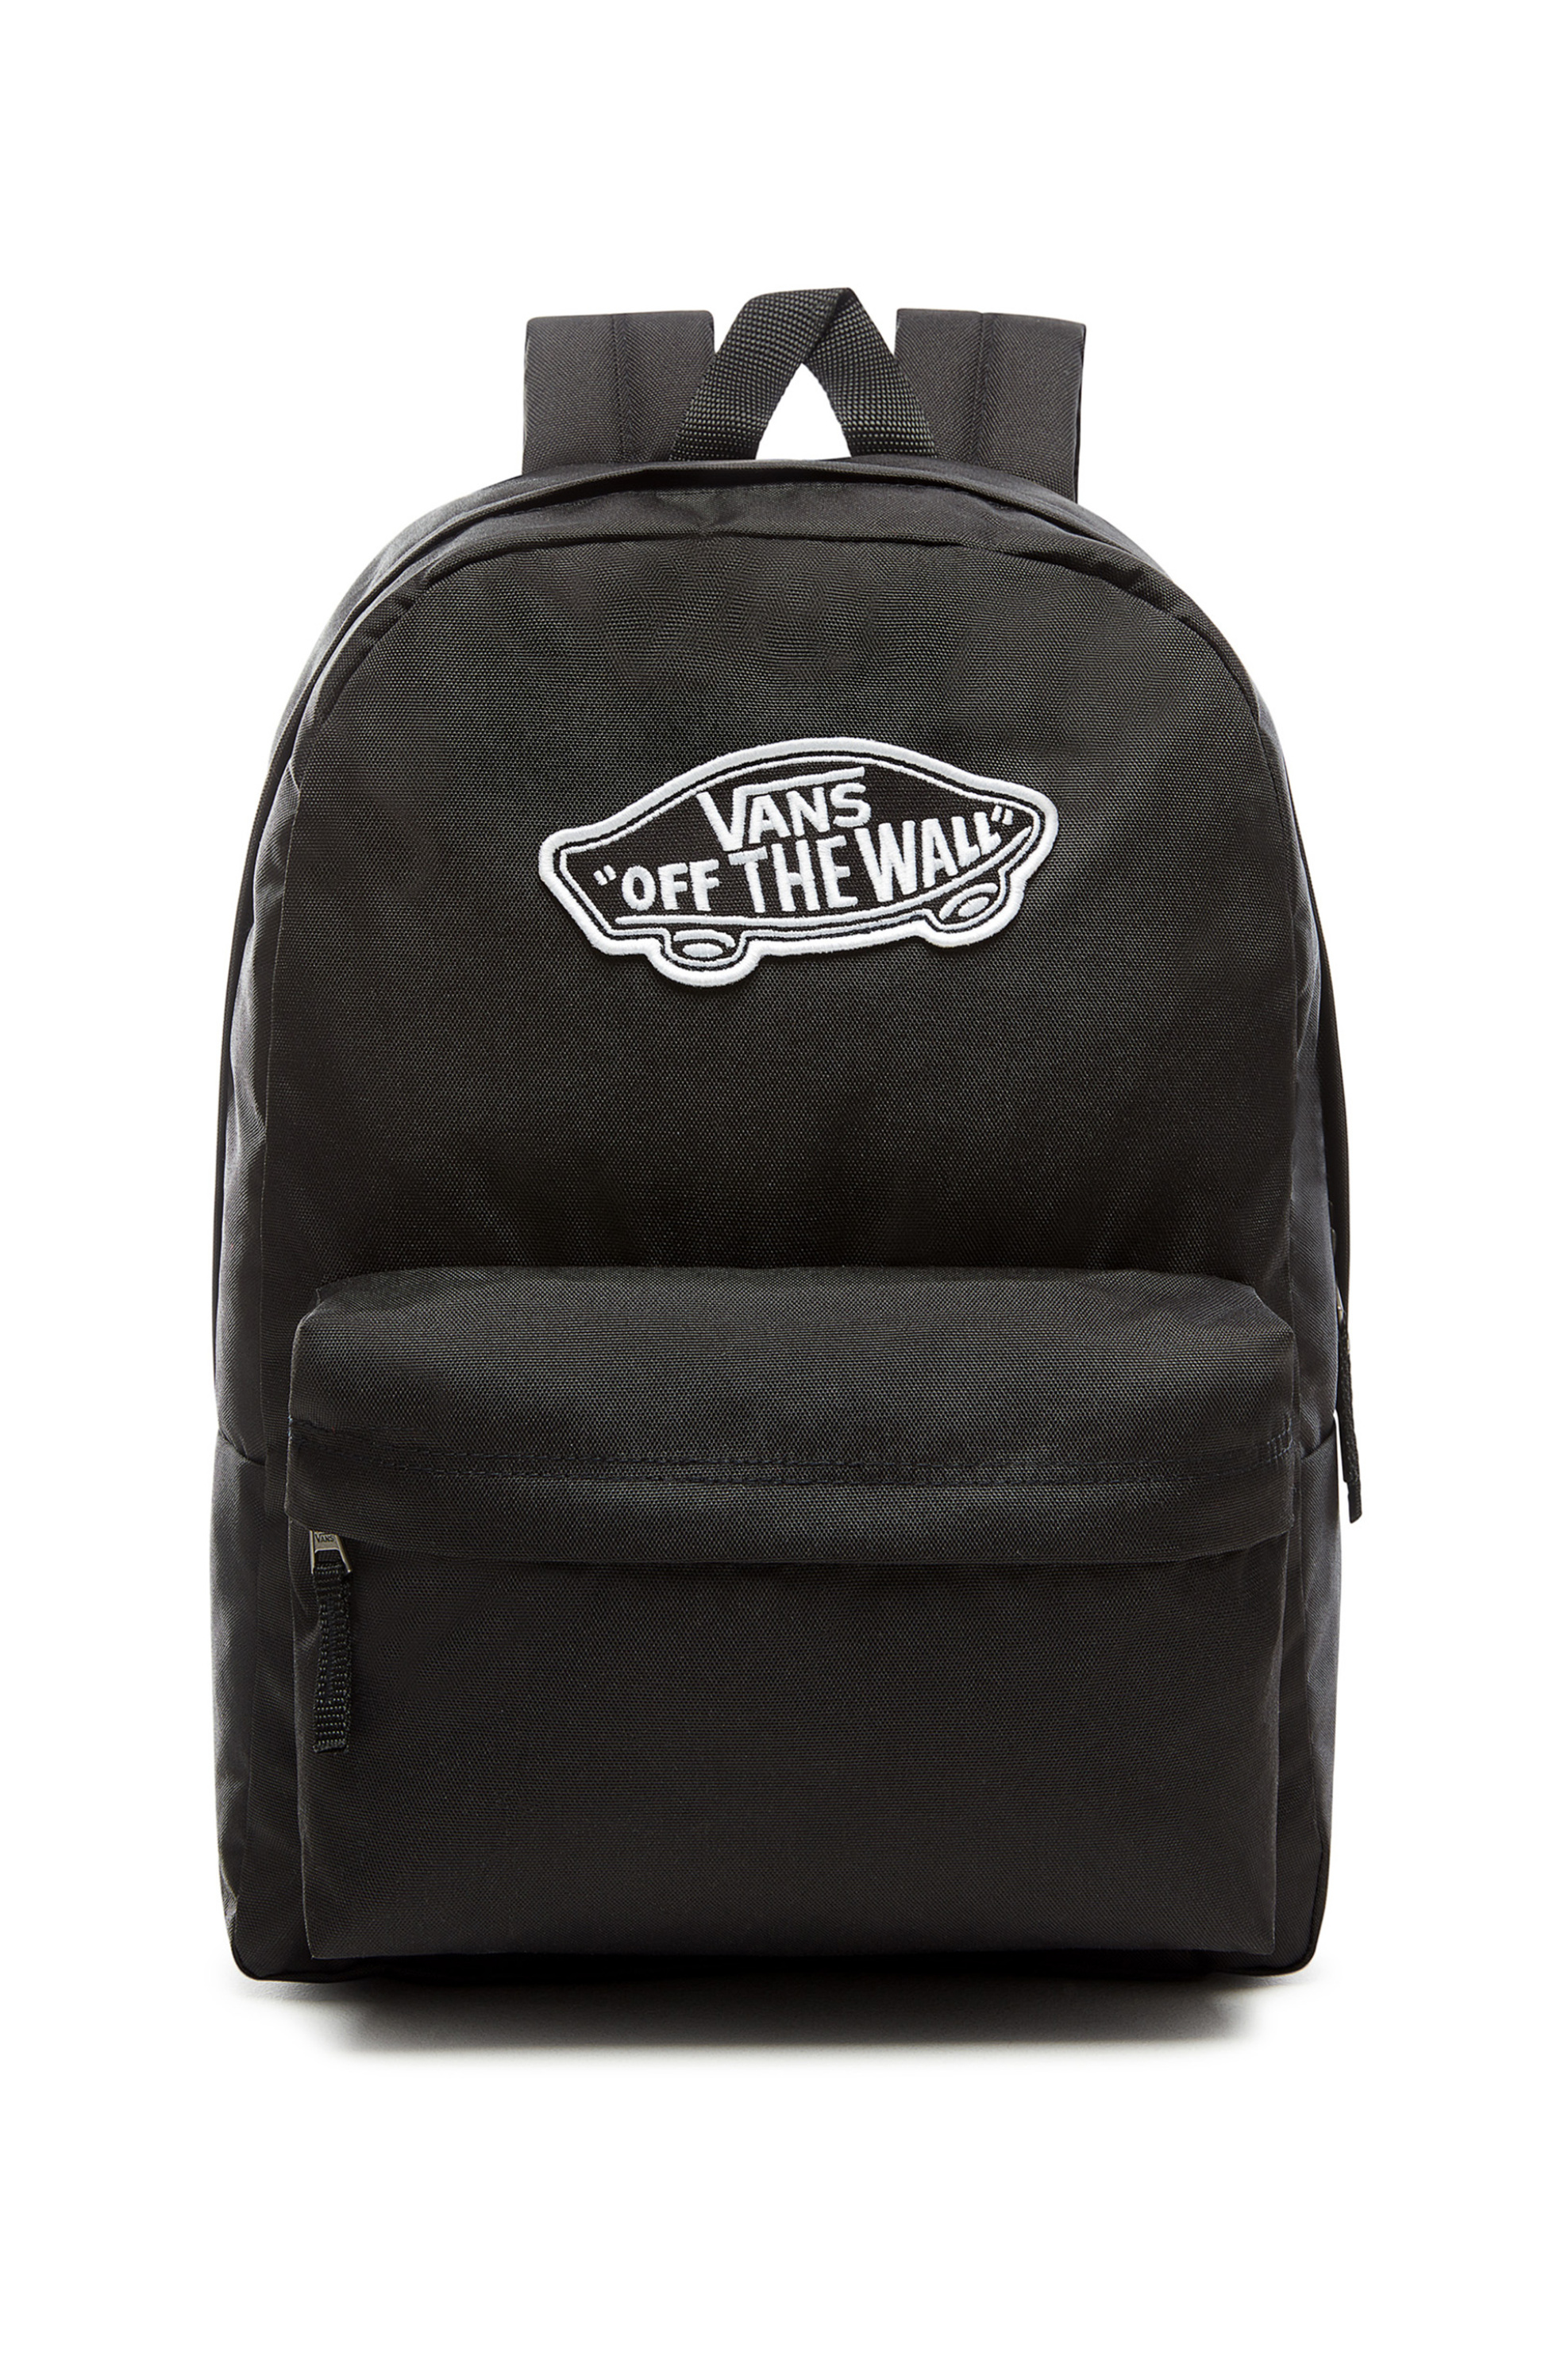 Γυναίκα > ΤΣΑΝΤΕΣ > Σακίδια & Backpacks Vans γυναικείο backpack Realm με brand logo - VN0A3UI6BLK1 Μαύρο